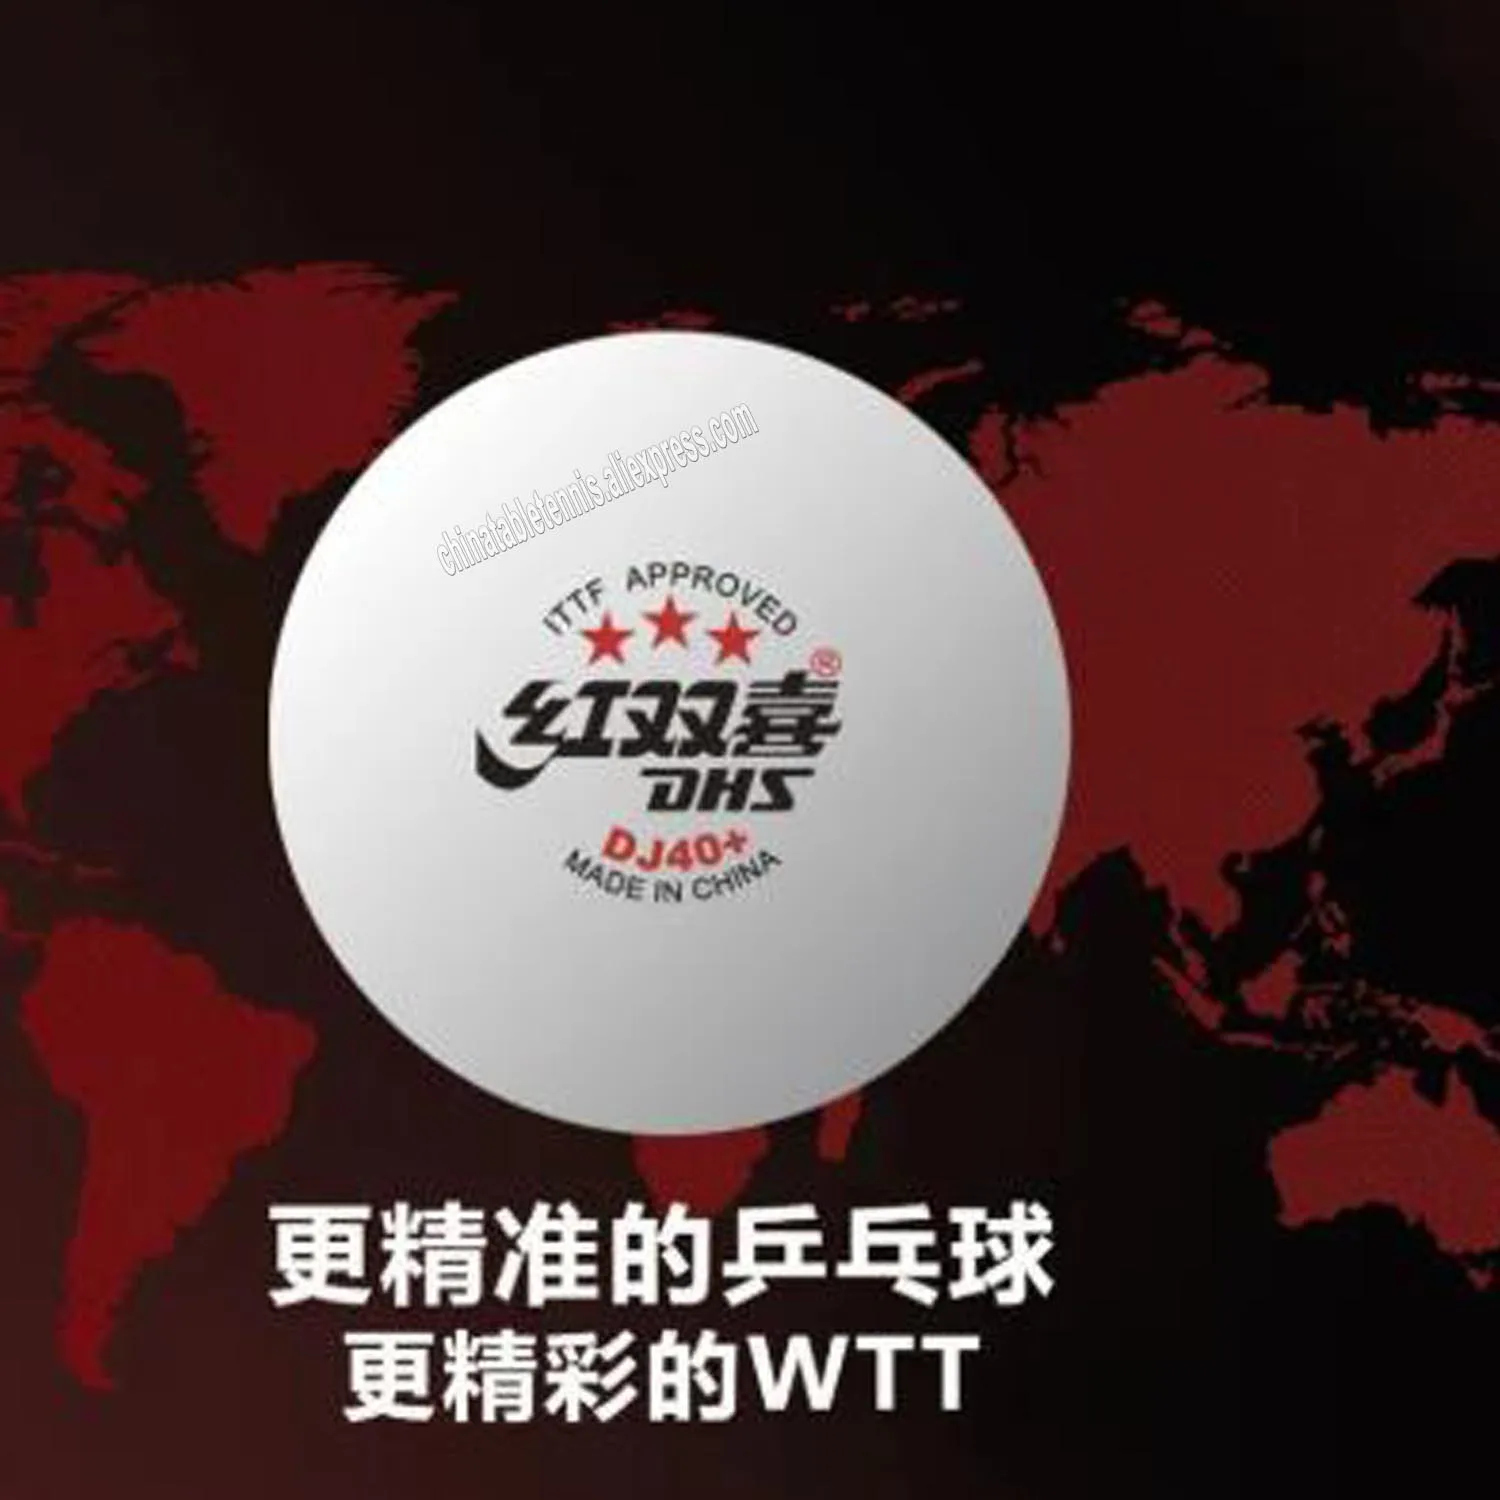 

Мячи DHS DJ40 + 3 звезды для соревнований по WTT ITTF 3 звезды из нового пластика ABS оригинальные DHS мячи для настольного тенниса пинг понга